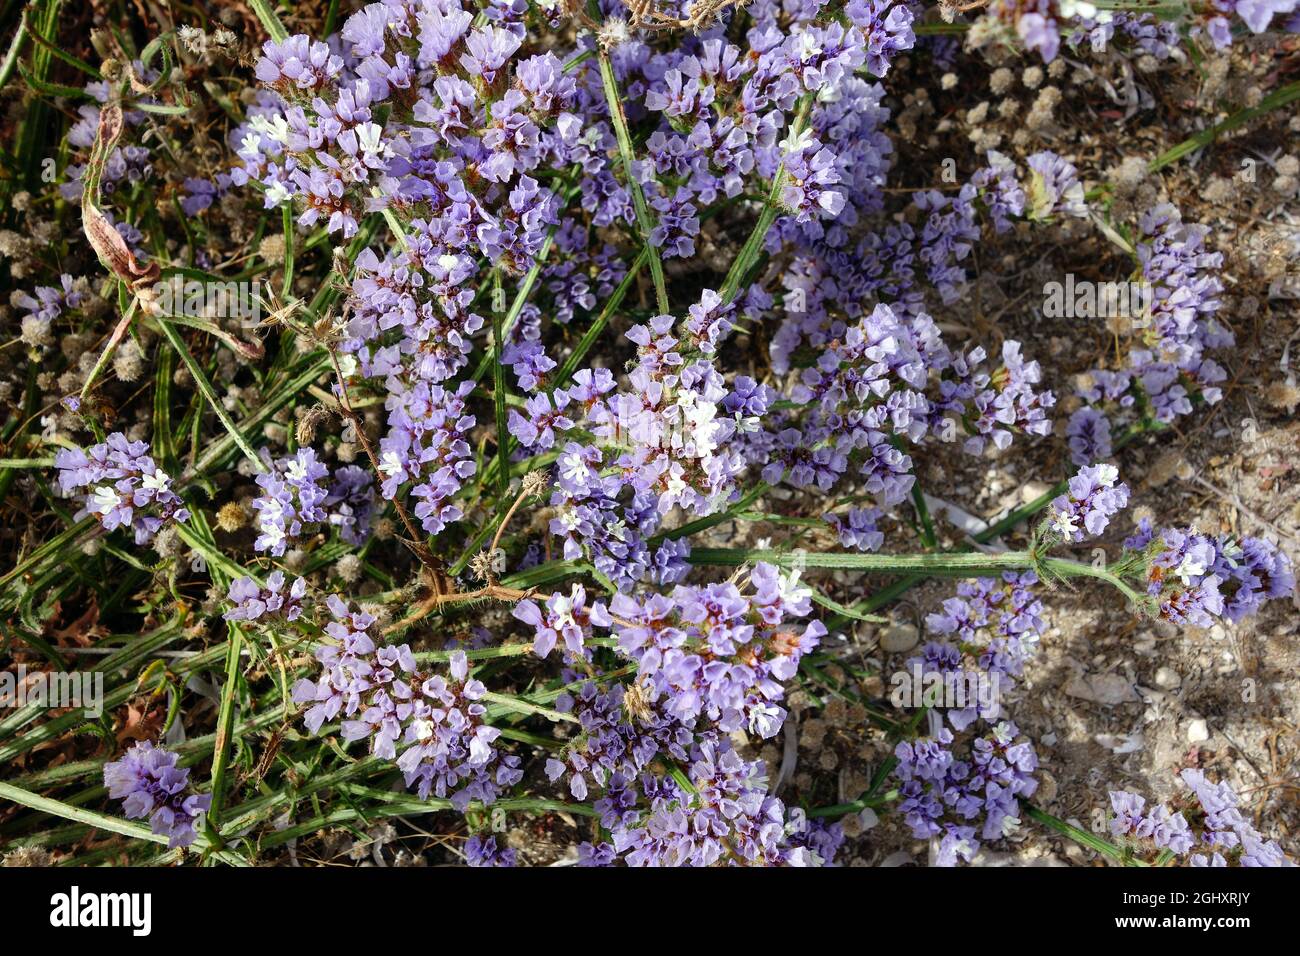 wavyleaf sea lavender, Geflügelter Strandflieder, Limonium sinuatum, egynyári sóvirág, Cyprus, Europe Stock Photo